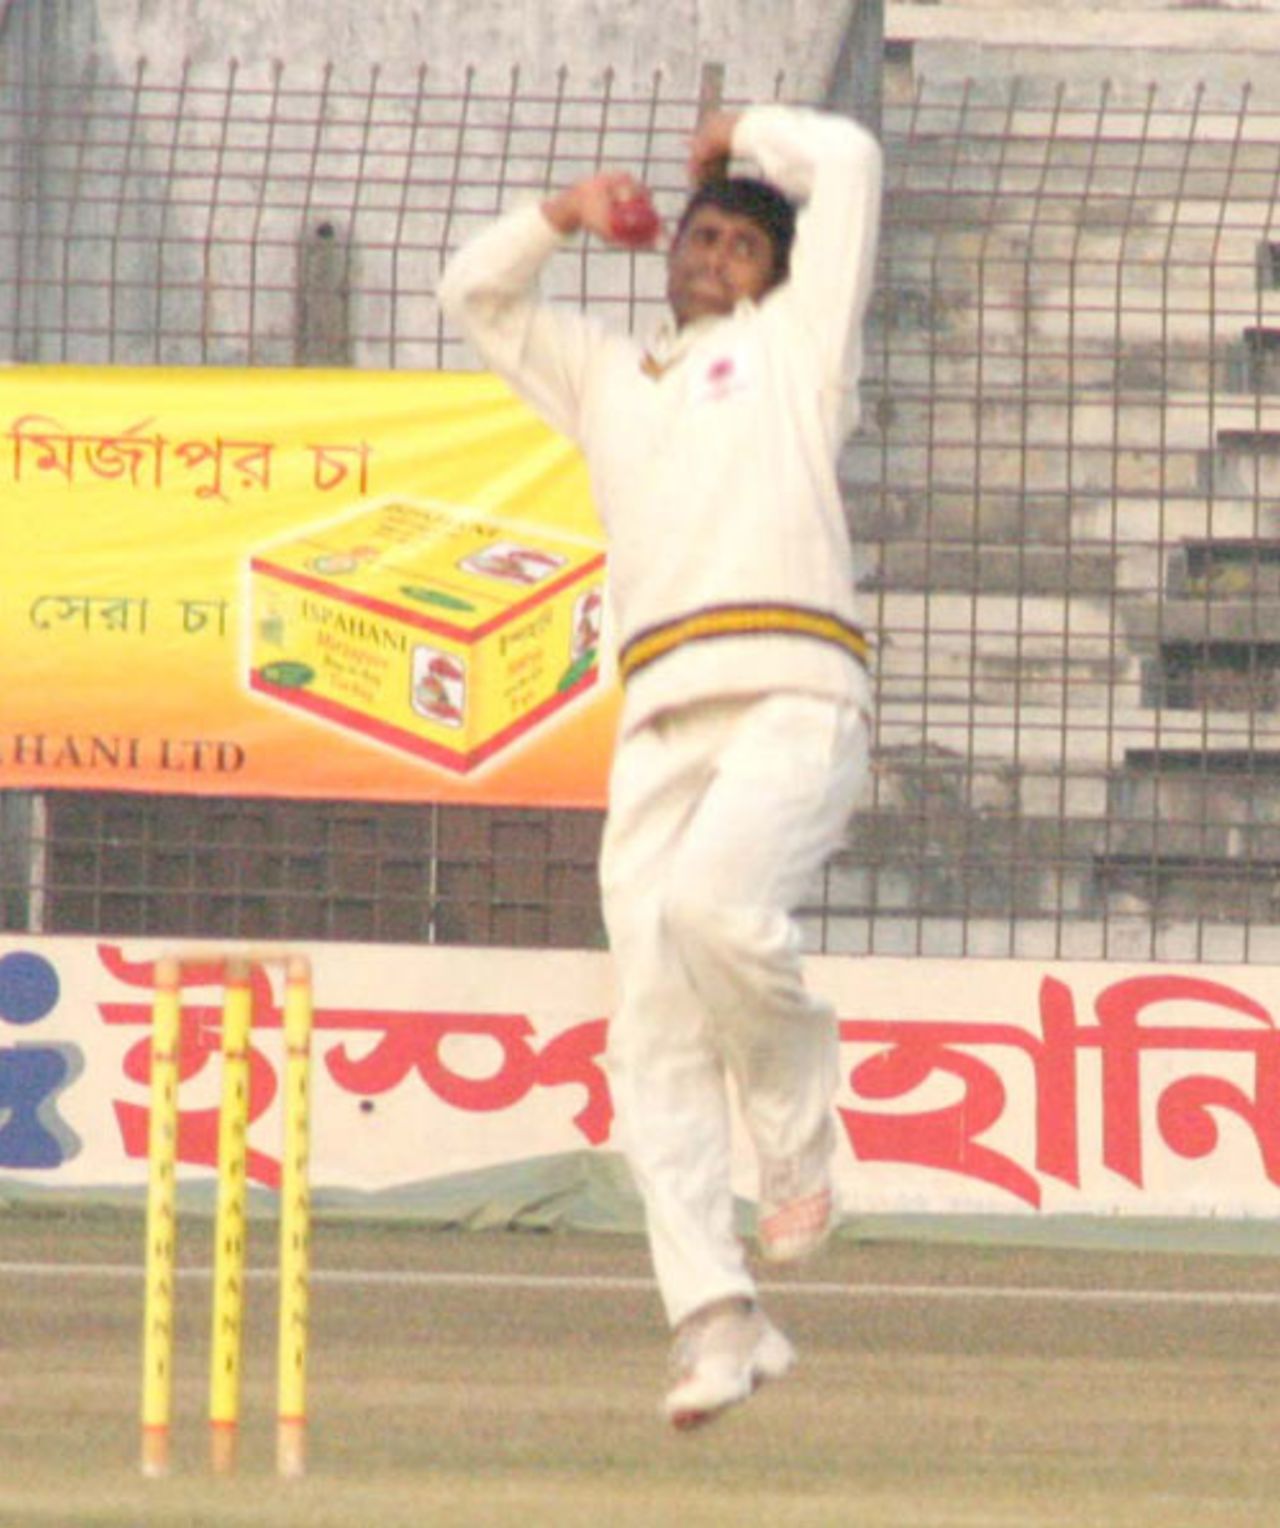 Rajshahi's Farhad Hossain took four wickets, Rajshahi v Khulna, National Cricket League 9th round, 2nd day, Rajshahi Stadium, December 28, 2007